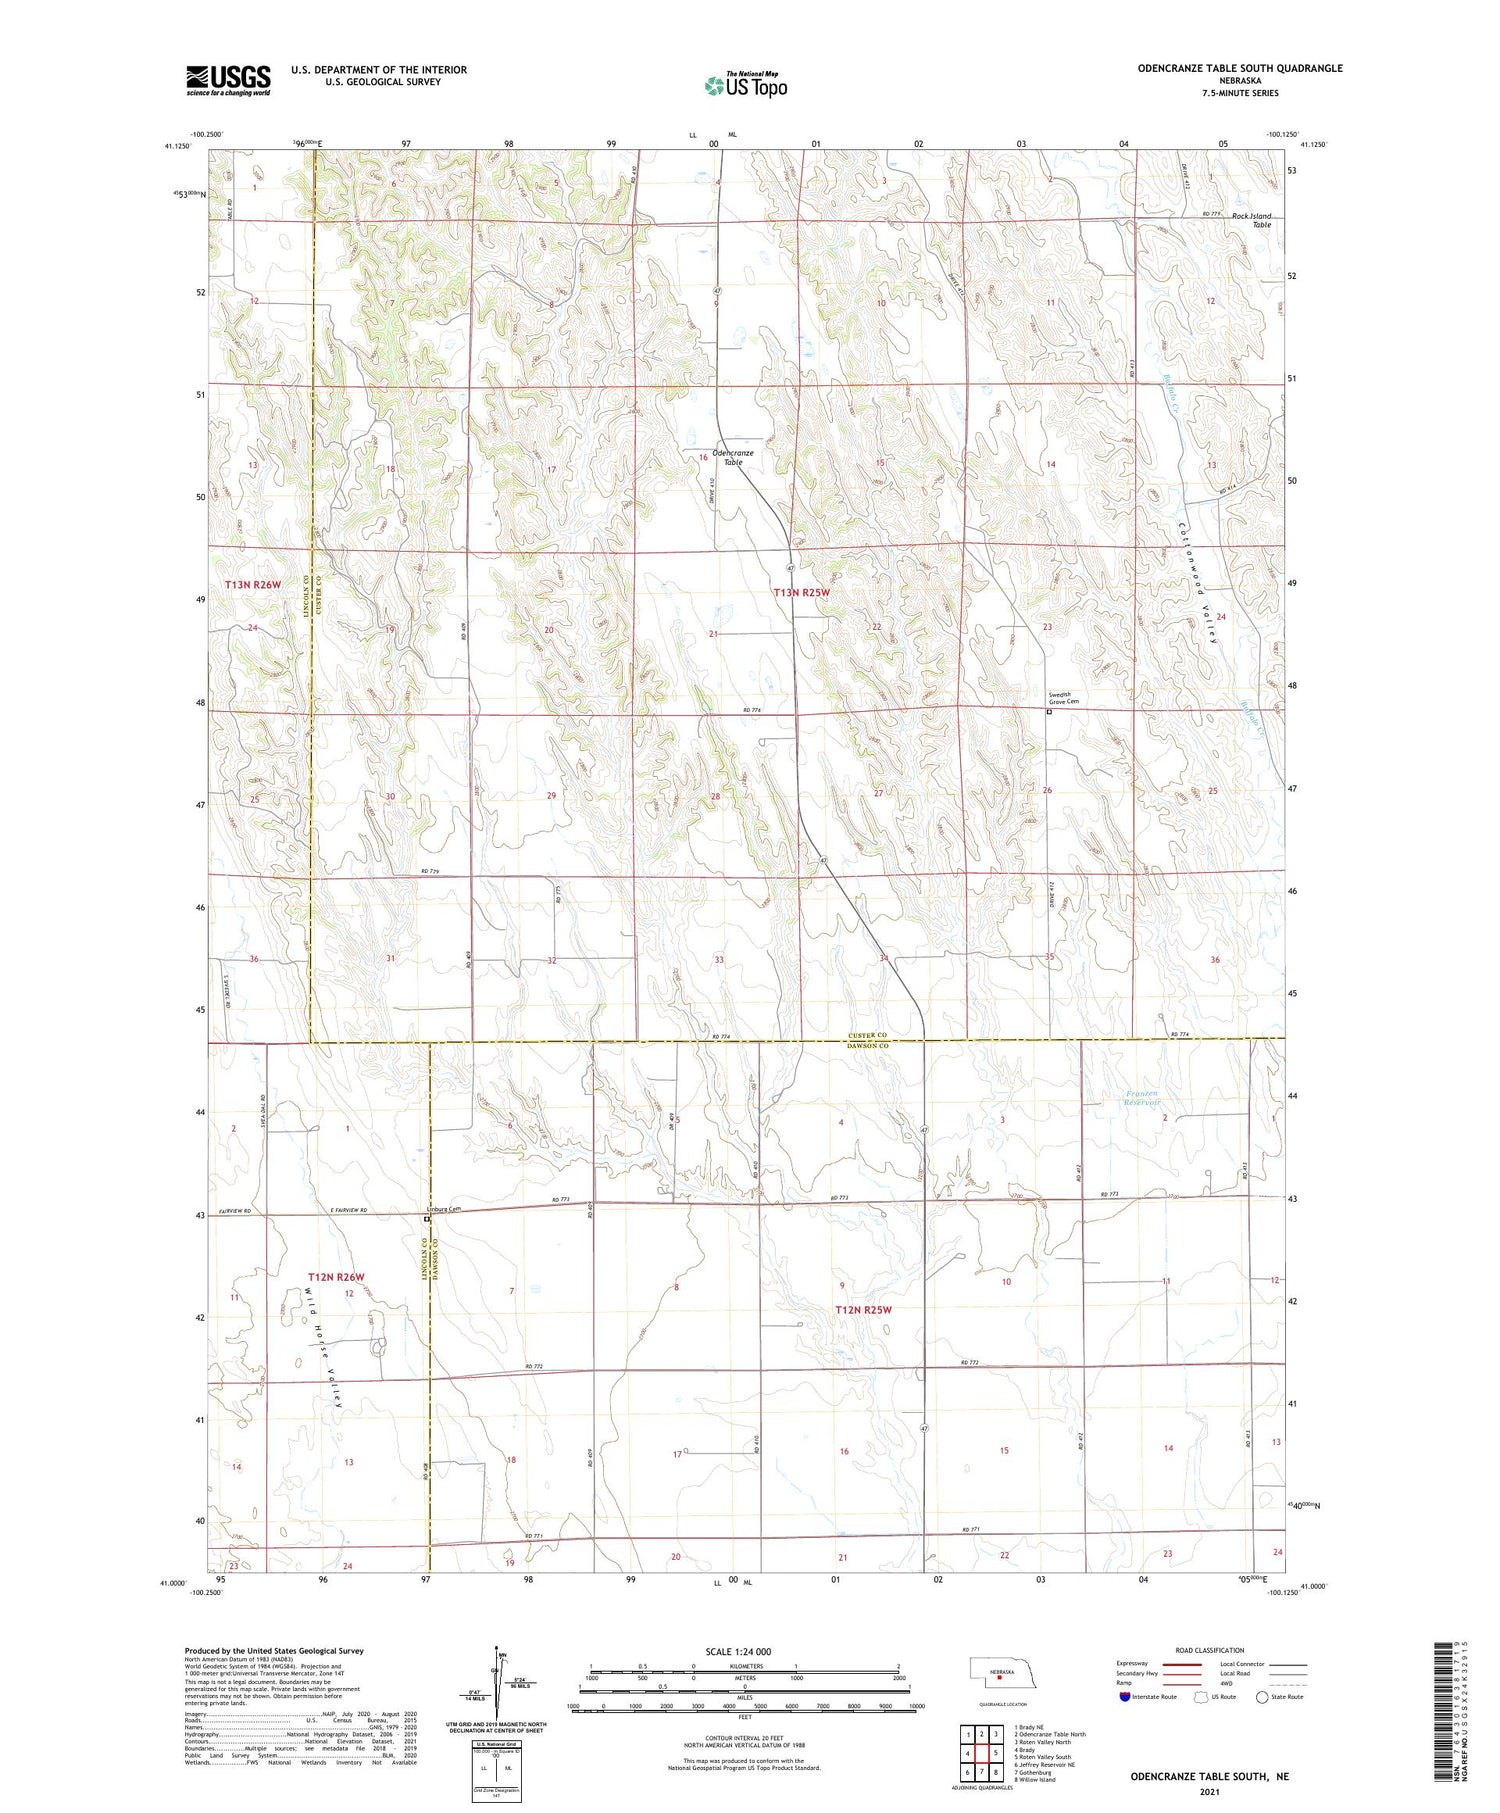 Odencranze Table South Nebraska US Topo Map Image